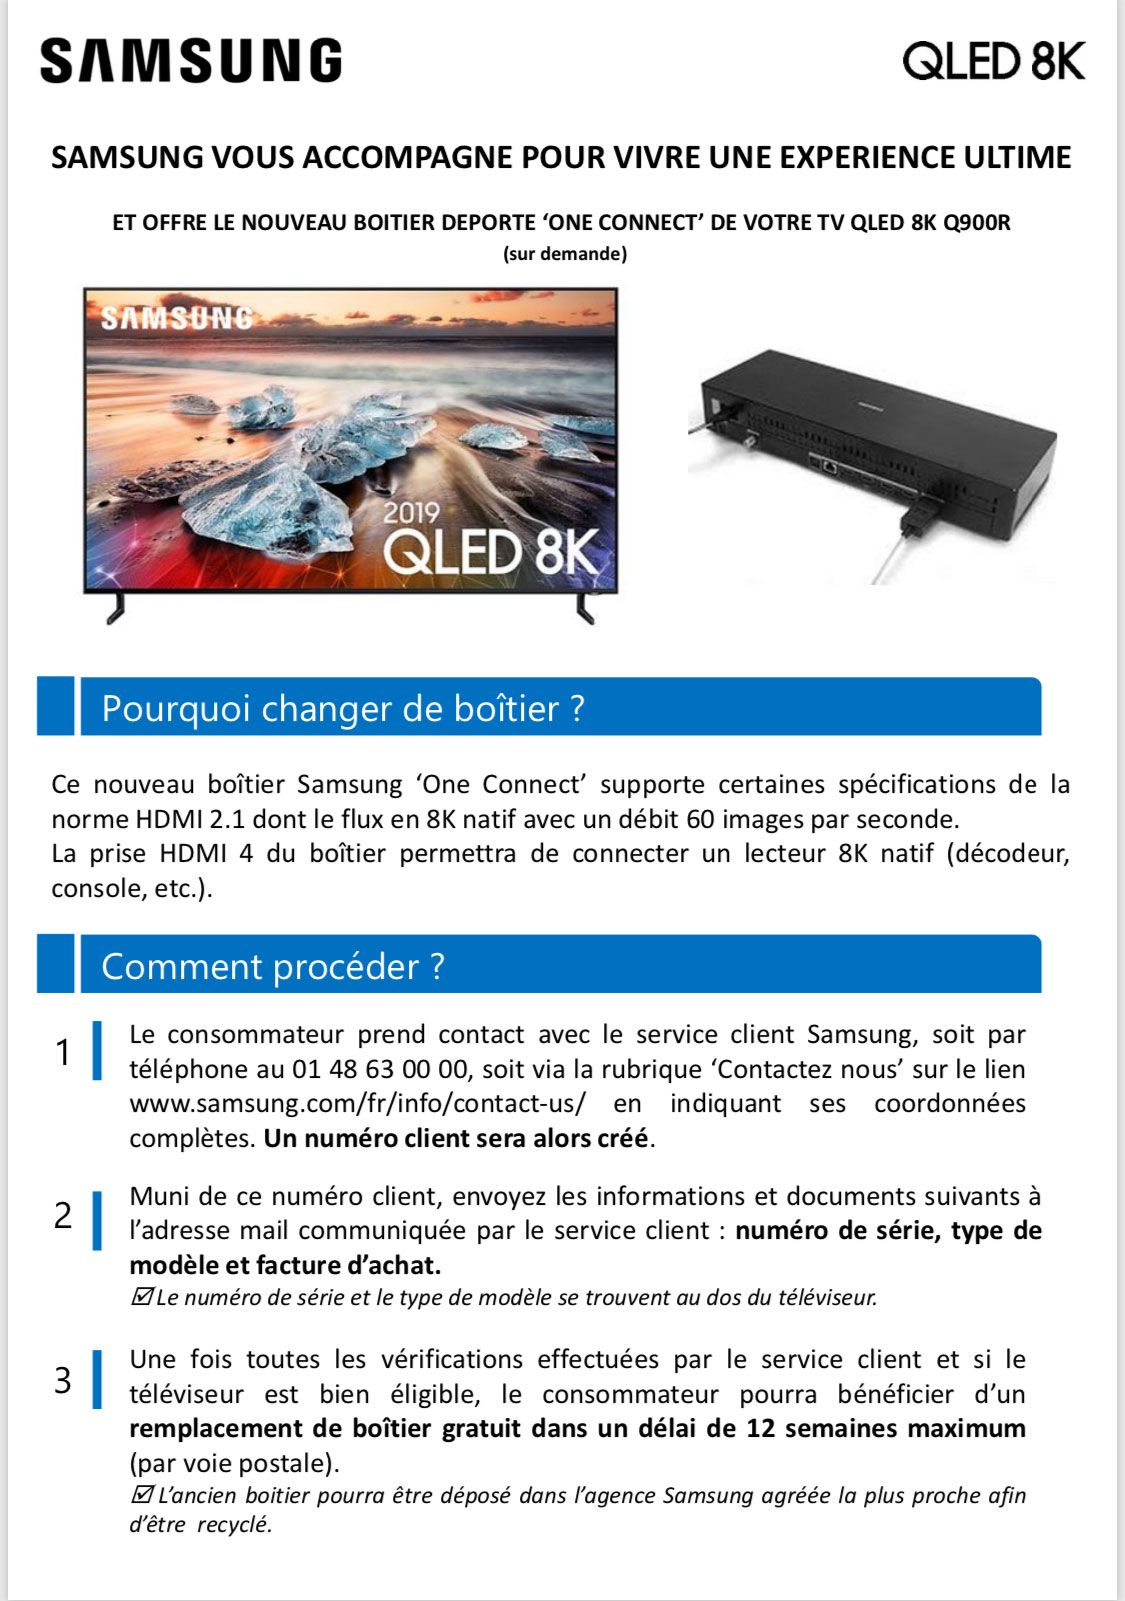 Résolu : TV QLED 8K Q900R : Boitier One Connect et compatibilité HDMI 2.1 -  Page 4 - Samsung Community